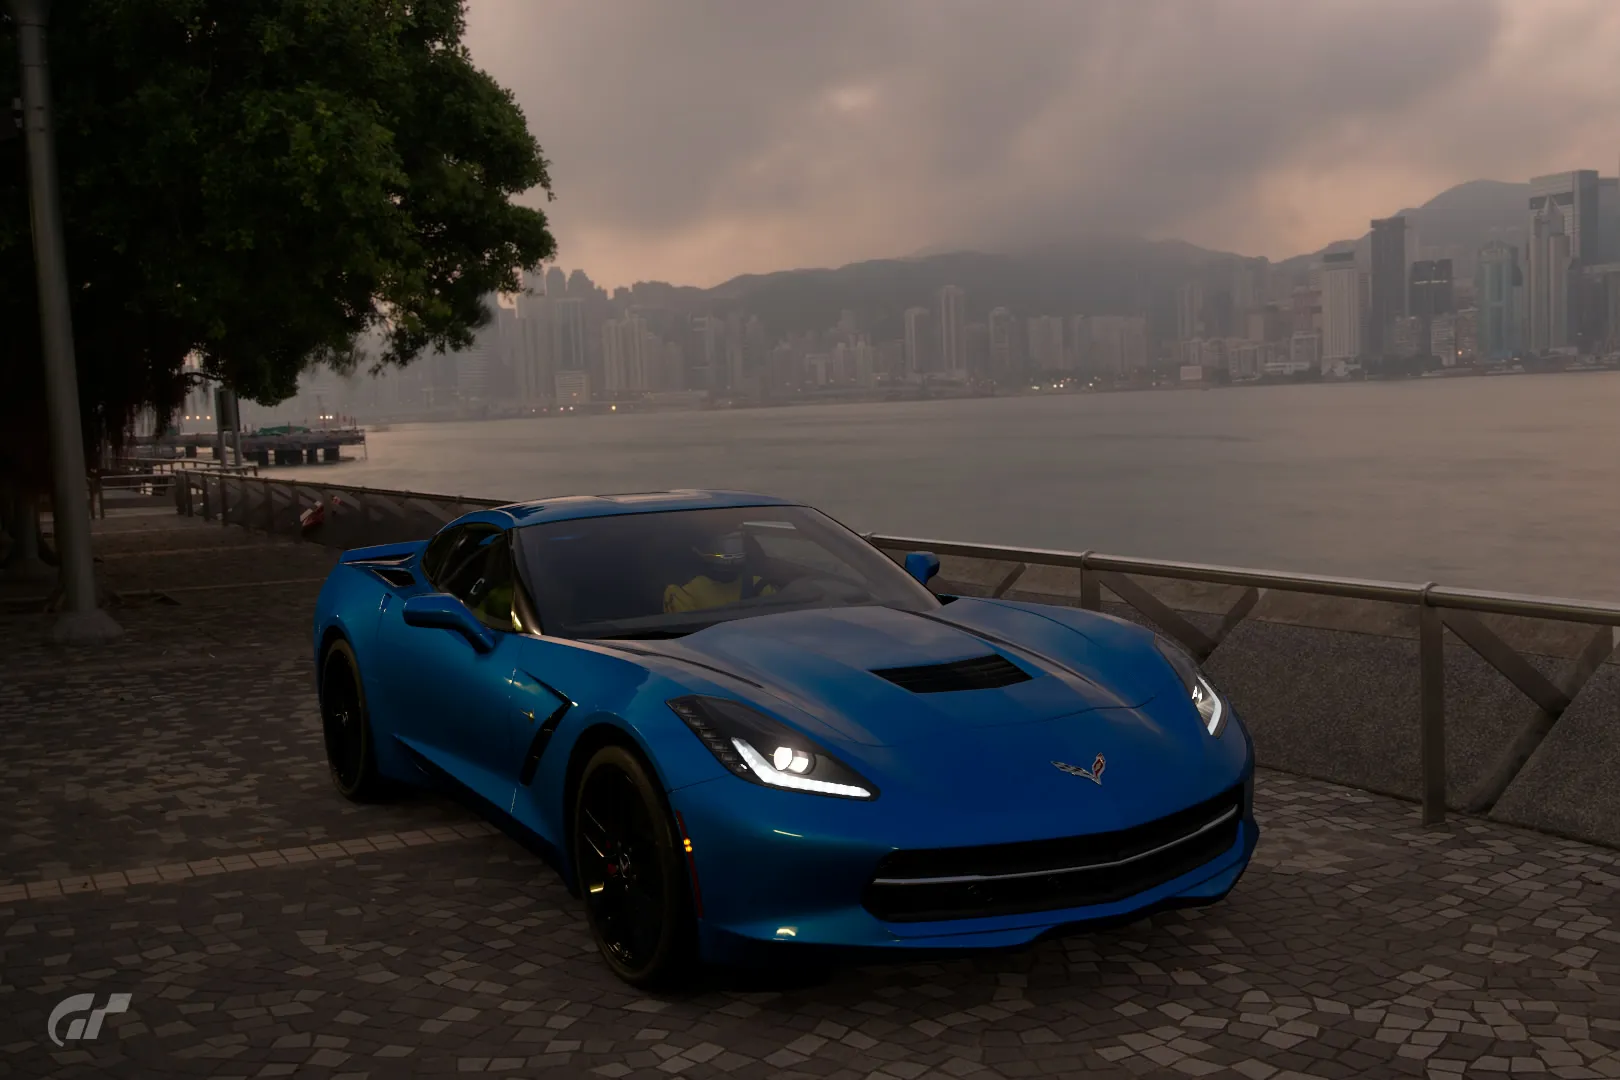 Project CARS versus Forza Motorsport 6 Demo - Graphics & Rain Comparison  Video